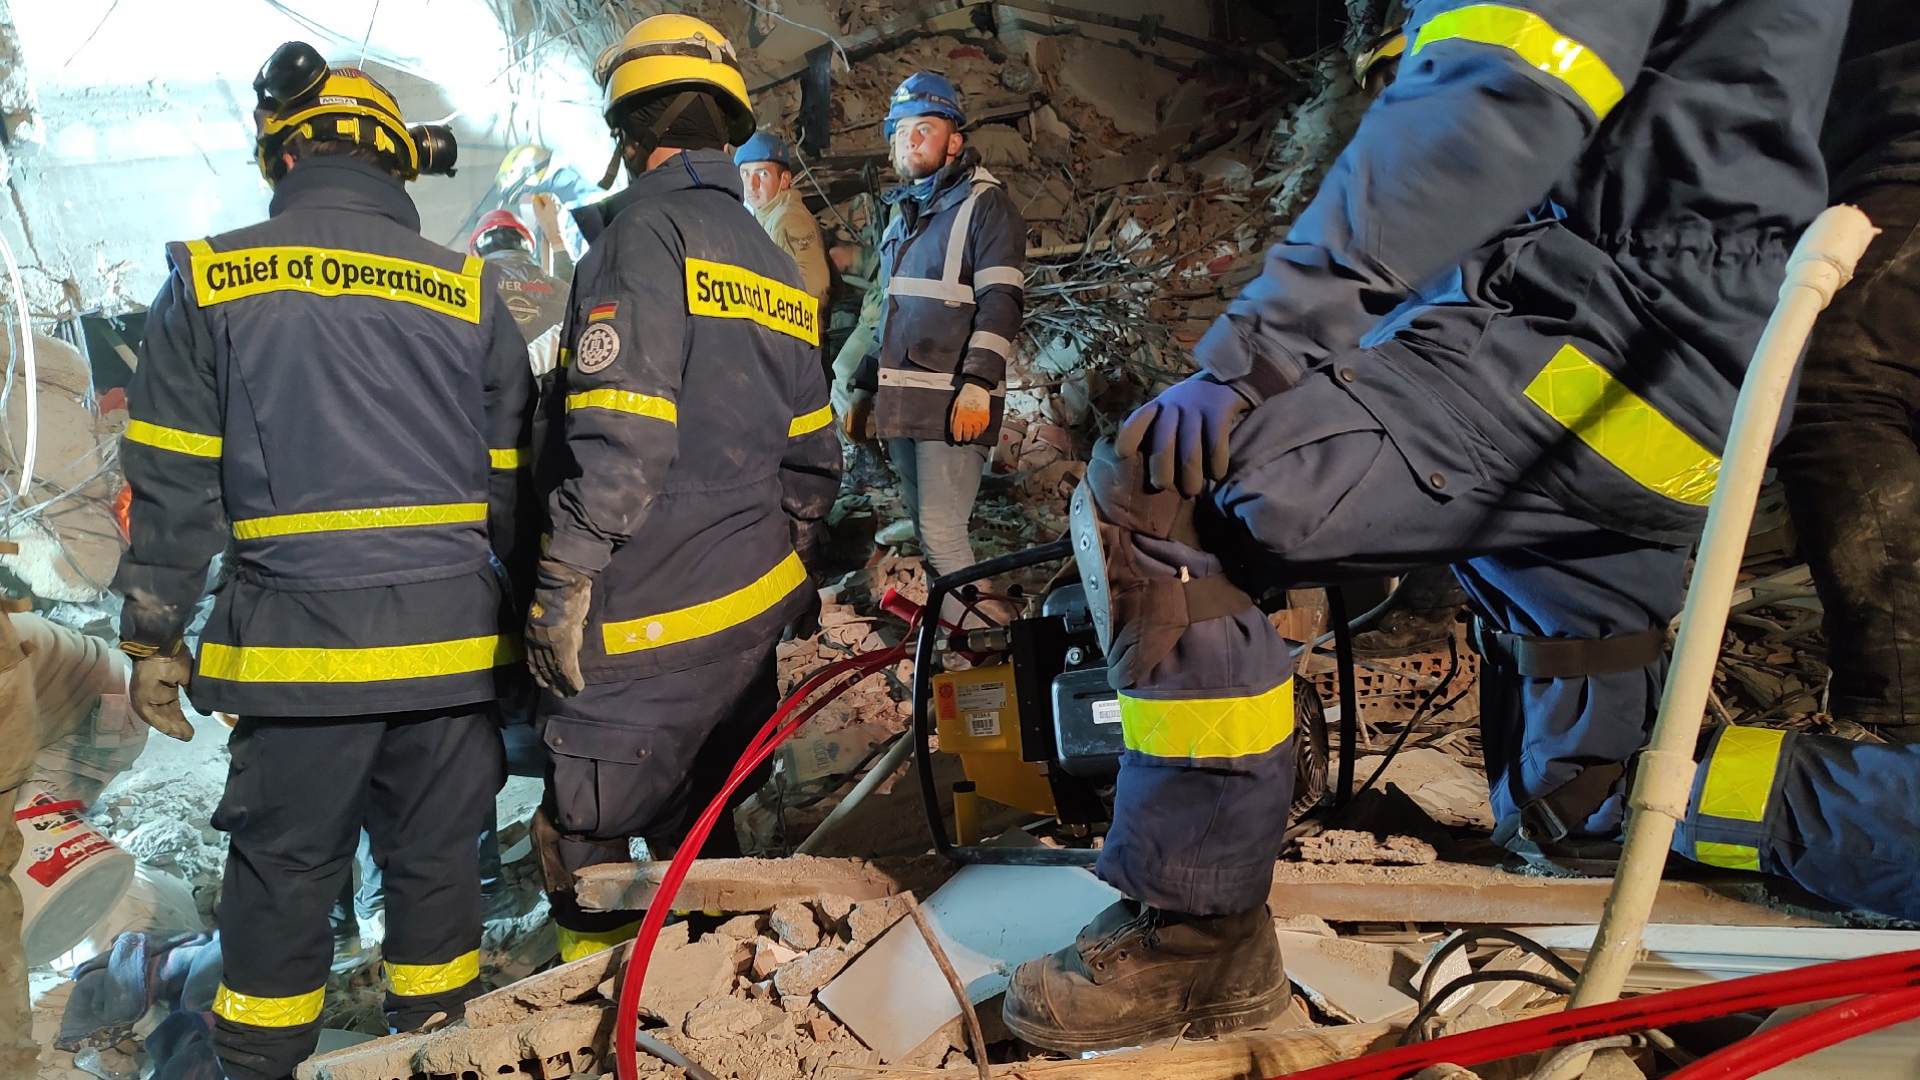 Einsatzkräfte des Technischen Hilfswerks (THW) stehen in den Trümmern eines eingestürzten Gebäudes. | dpa